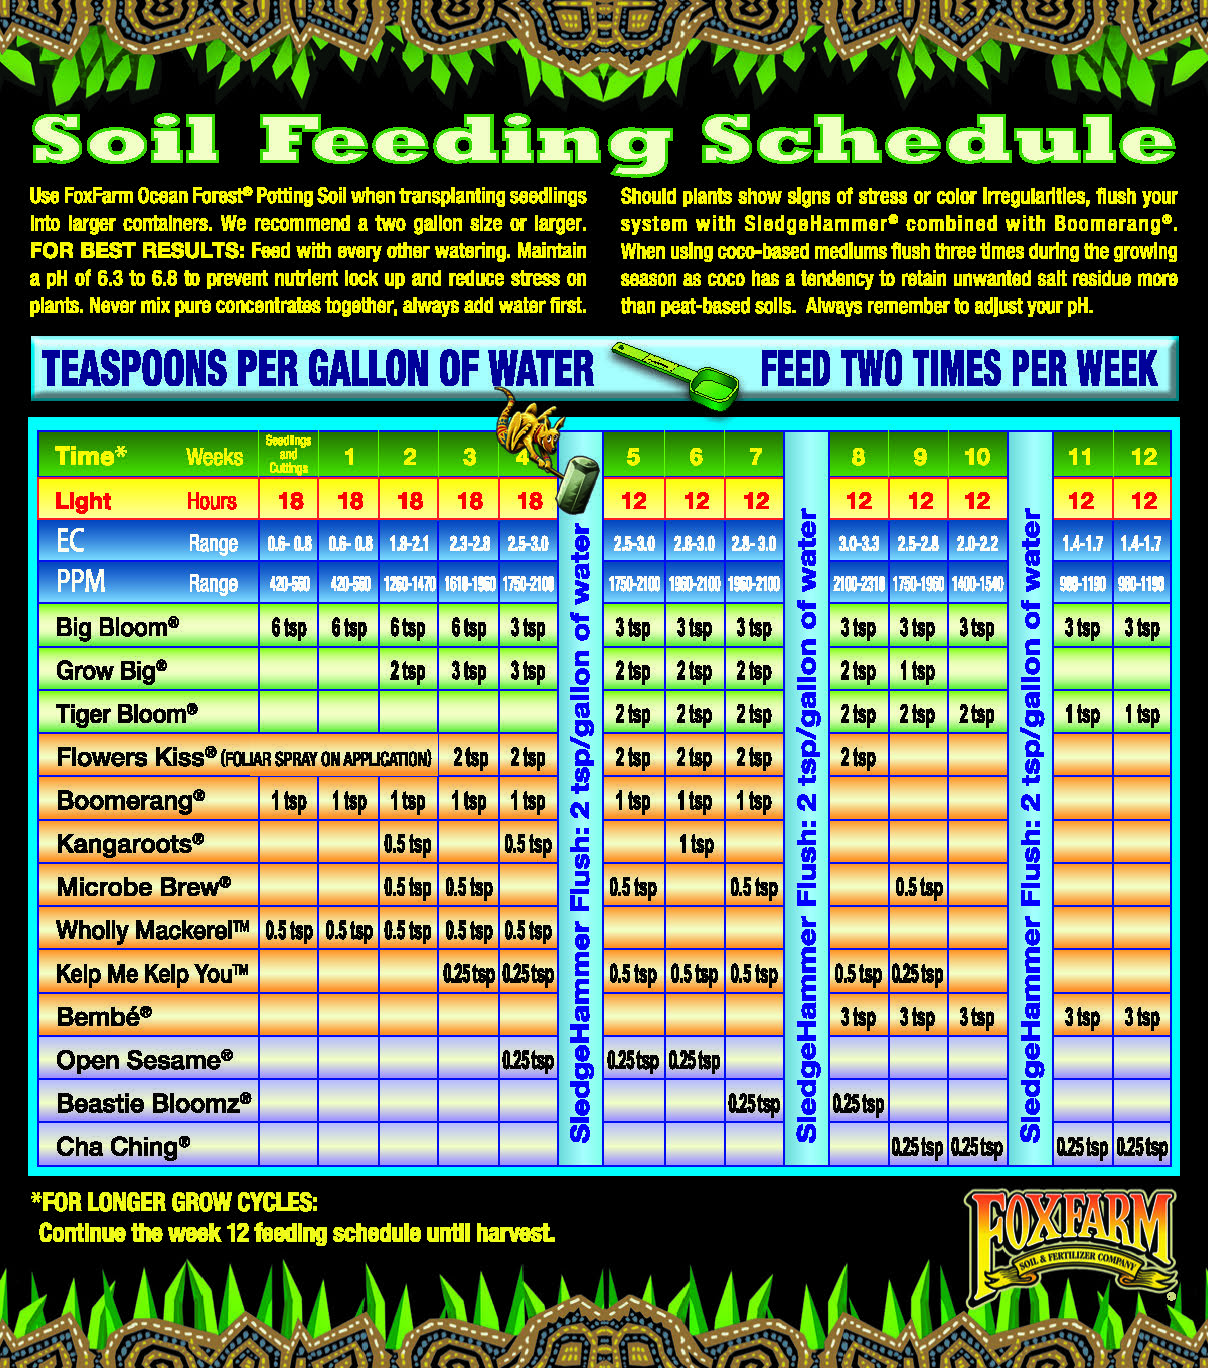 FoxFarms feeding schedule for soil - entire.jpg